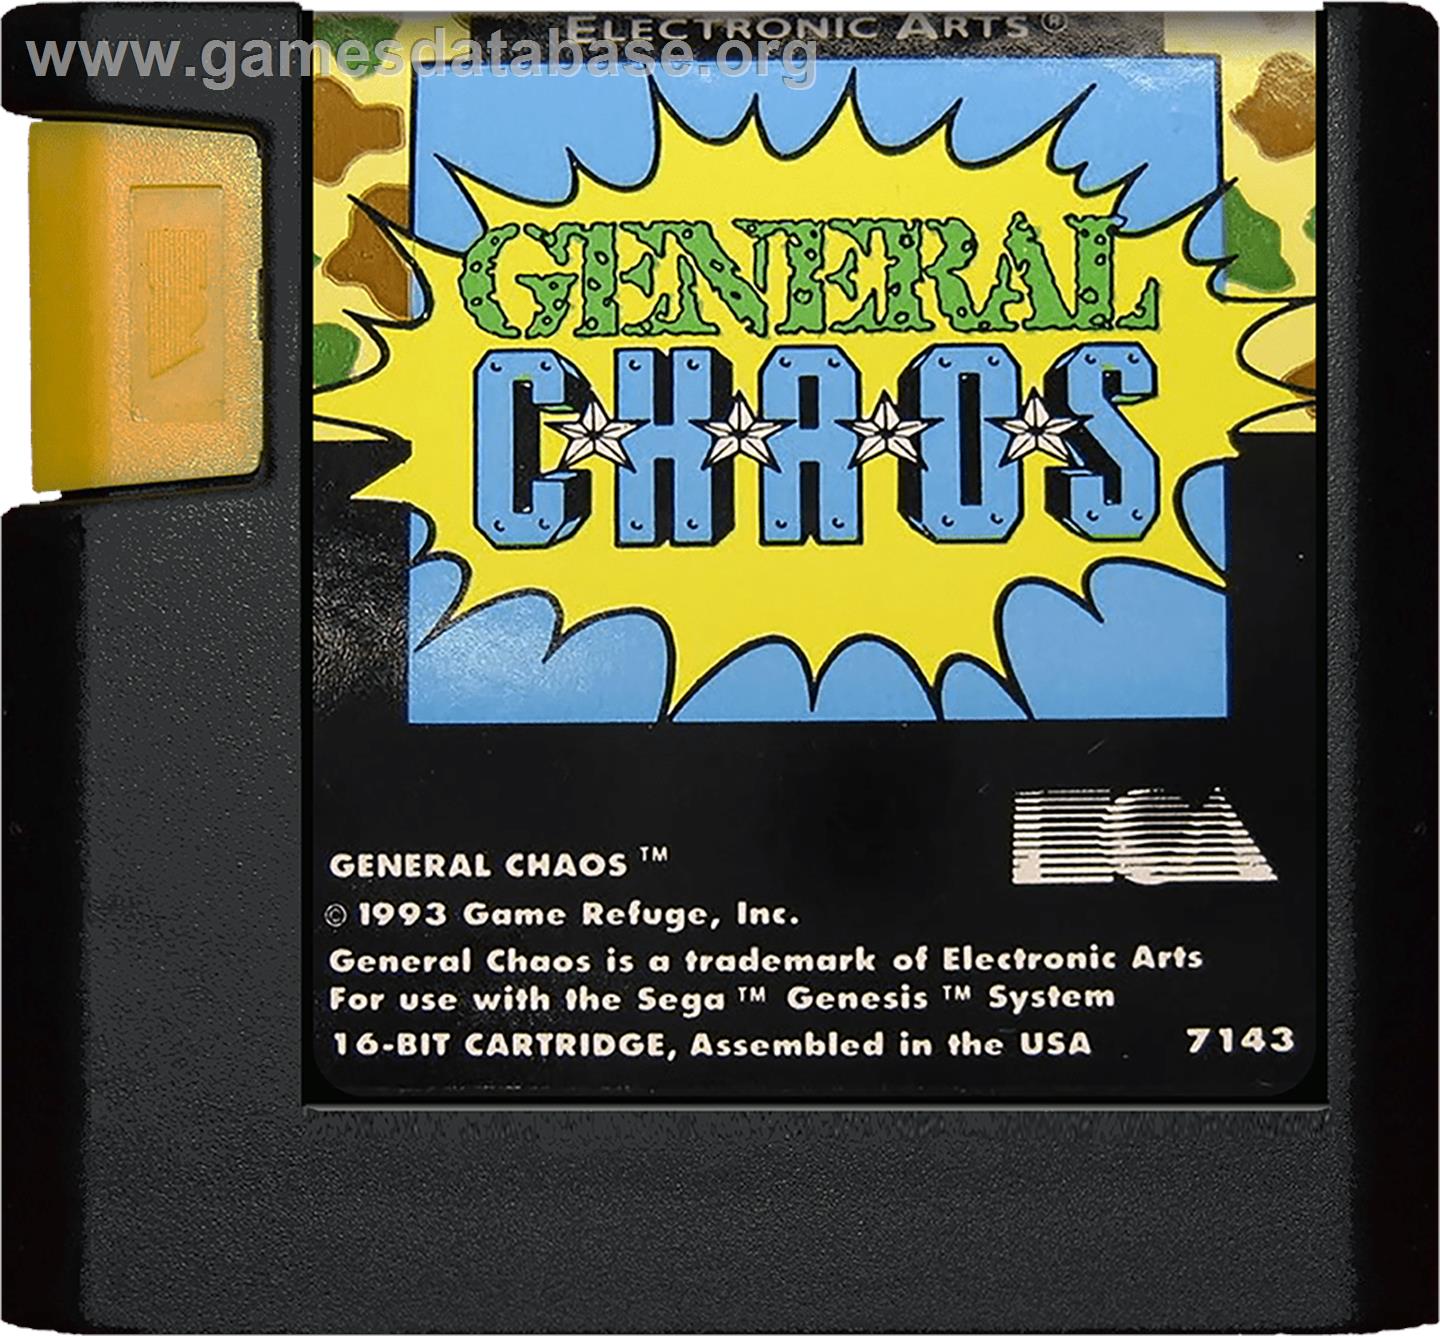 General Chaos - Sega Genesis - Artwork - Cartridge